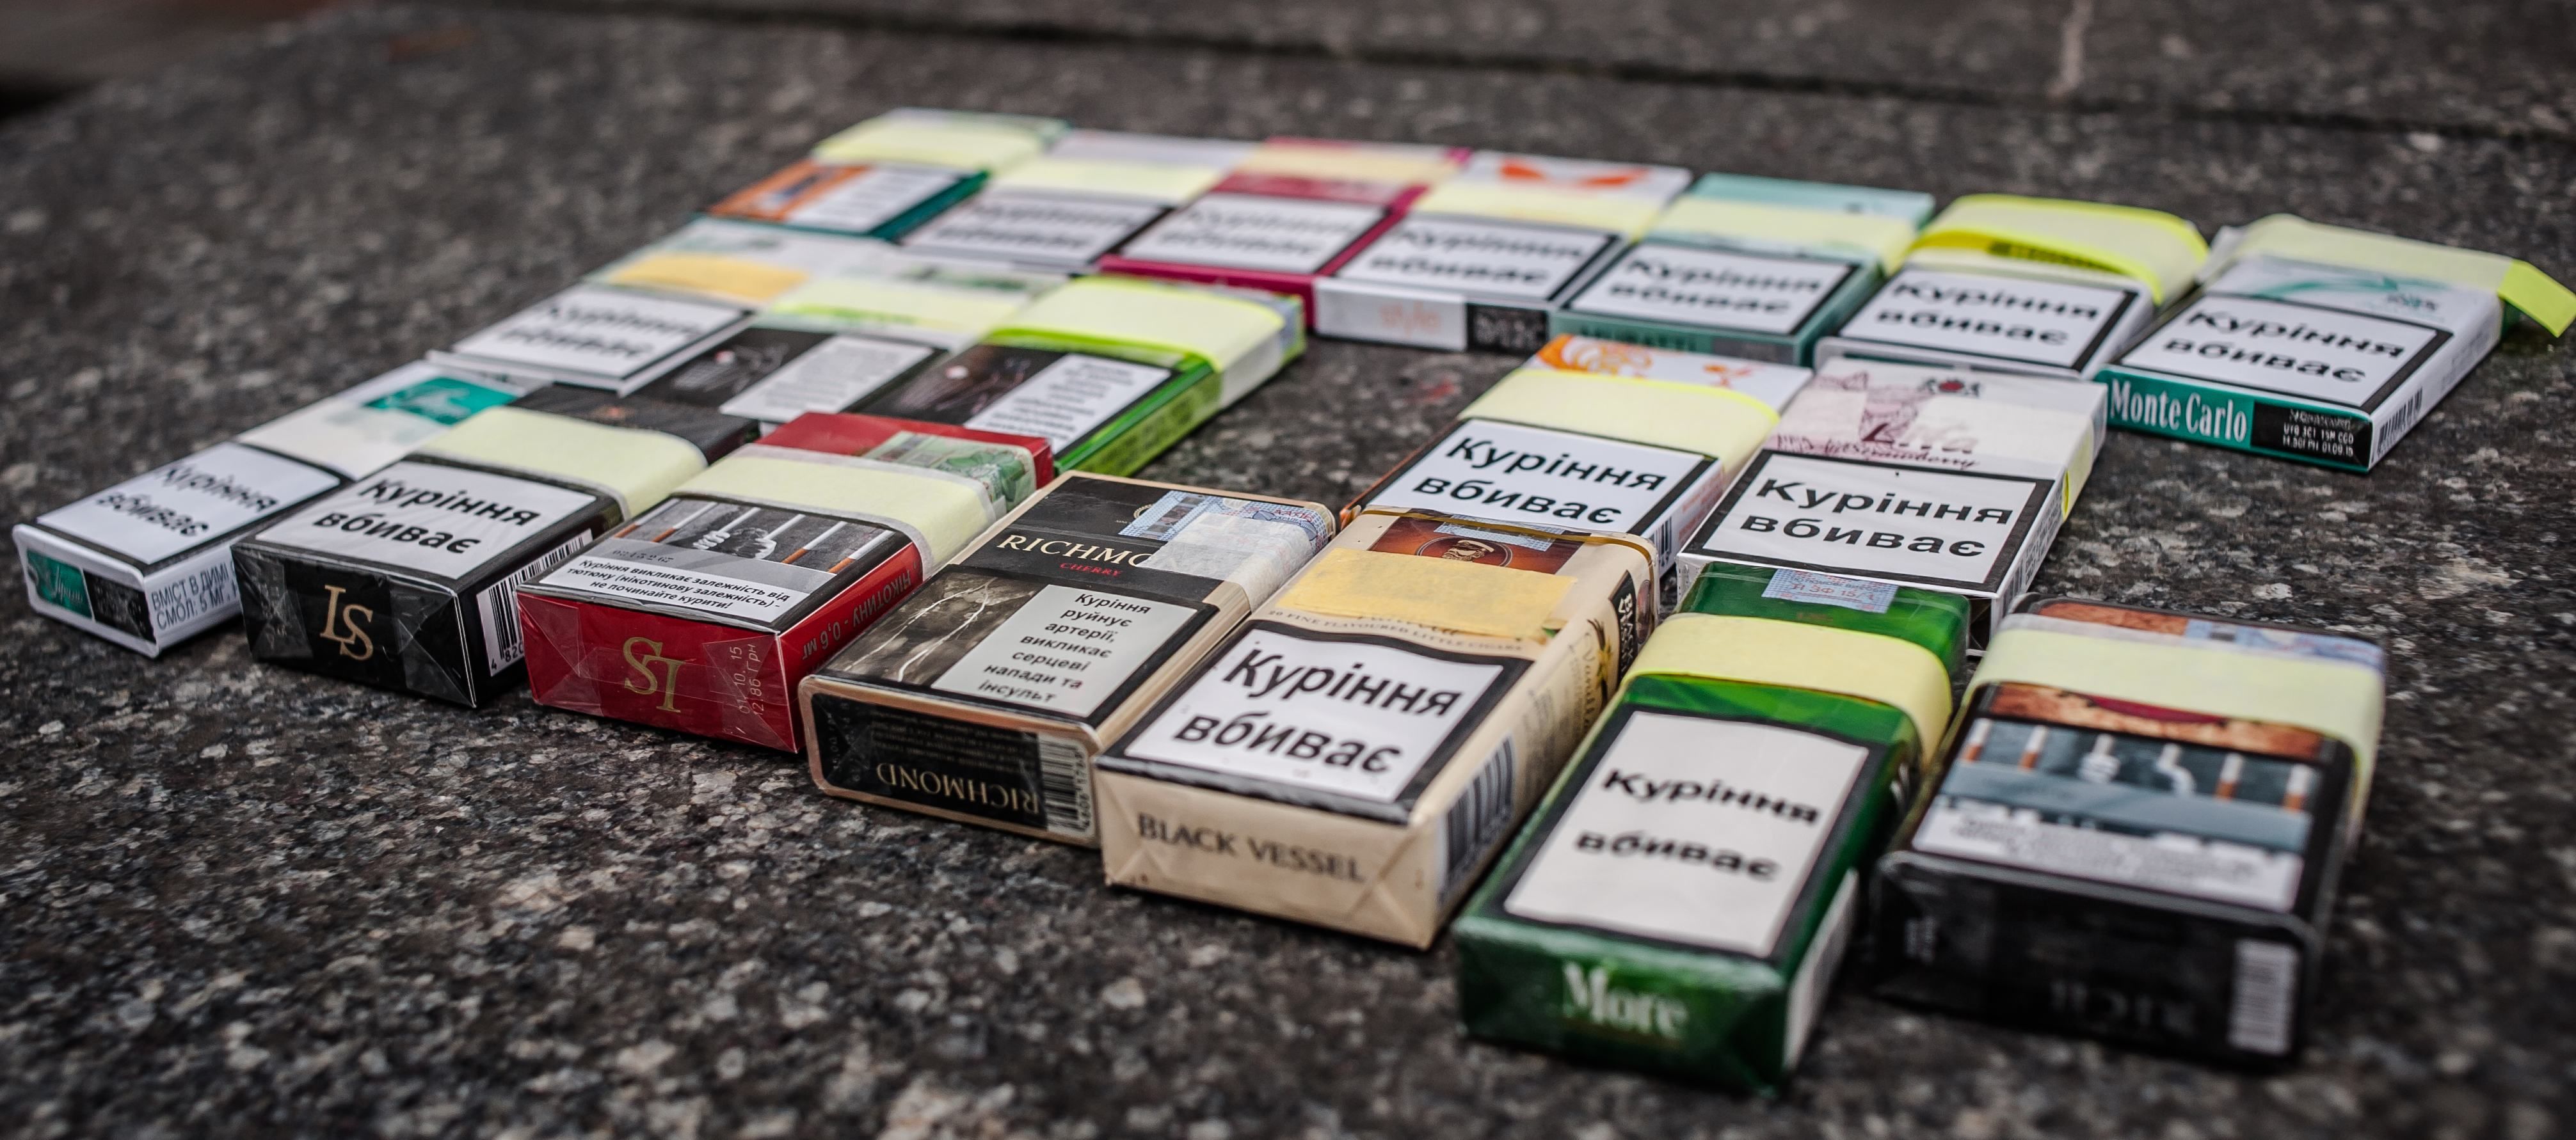 Сколько скоро будет стоить самая дешевая пачка сигарет